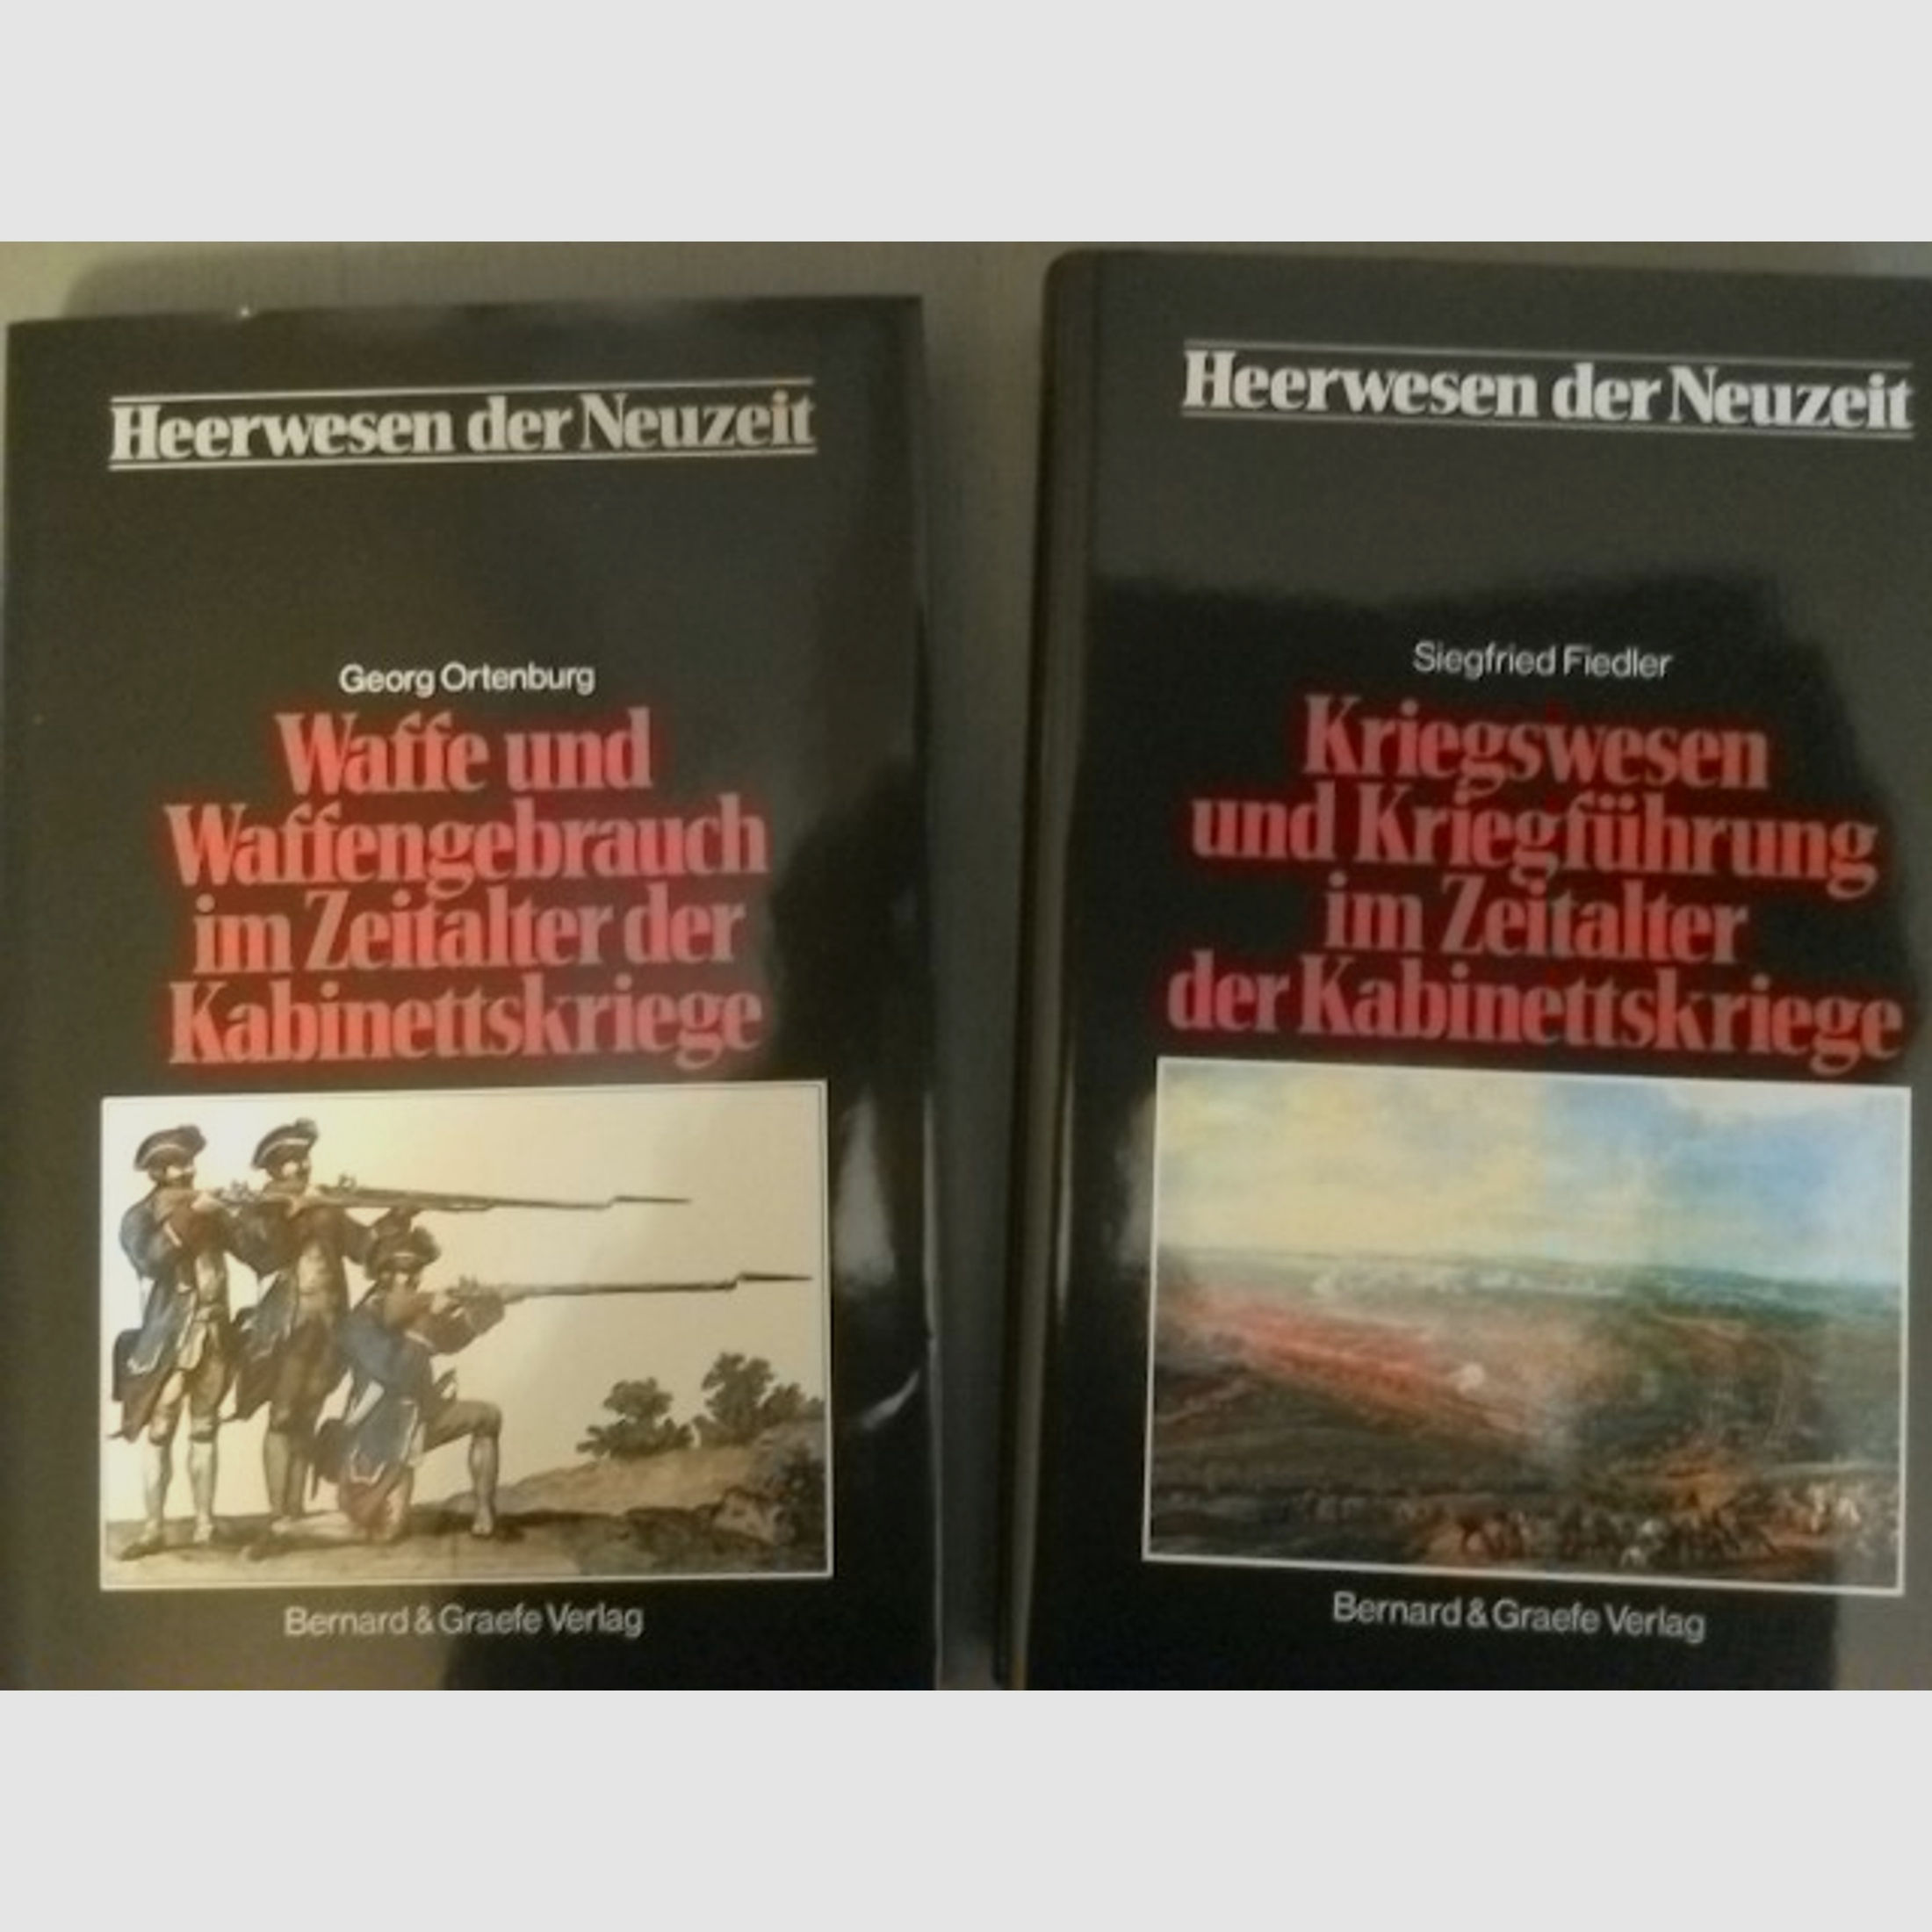 Bücher aus der Reihe "Heerwesen der Neuzeit"